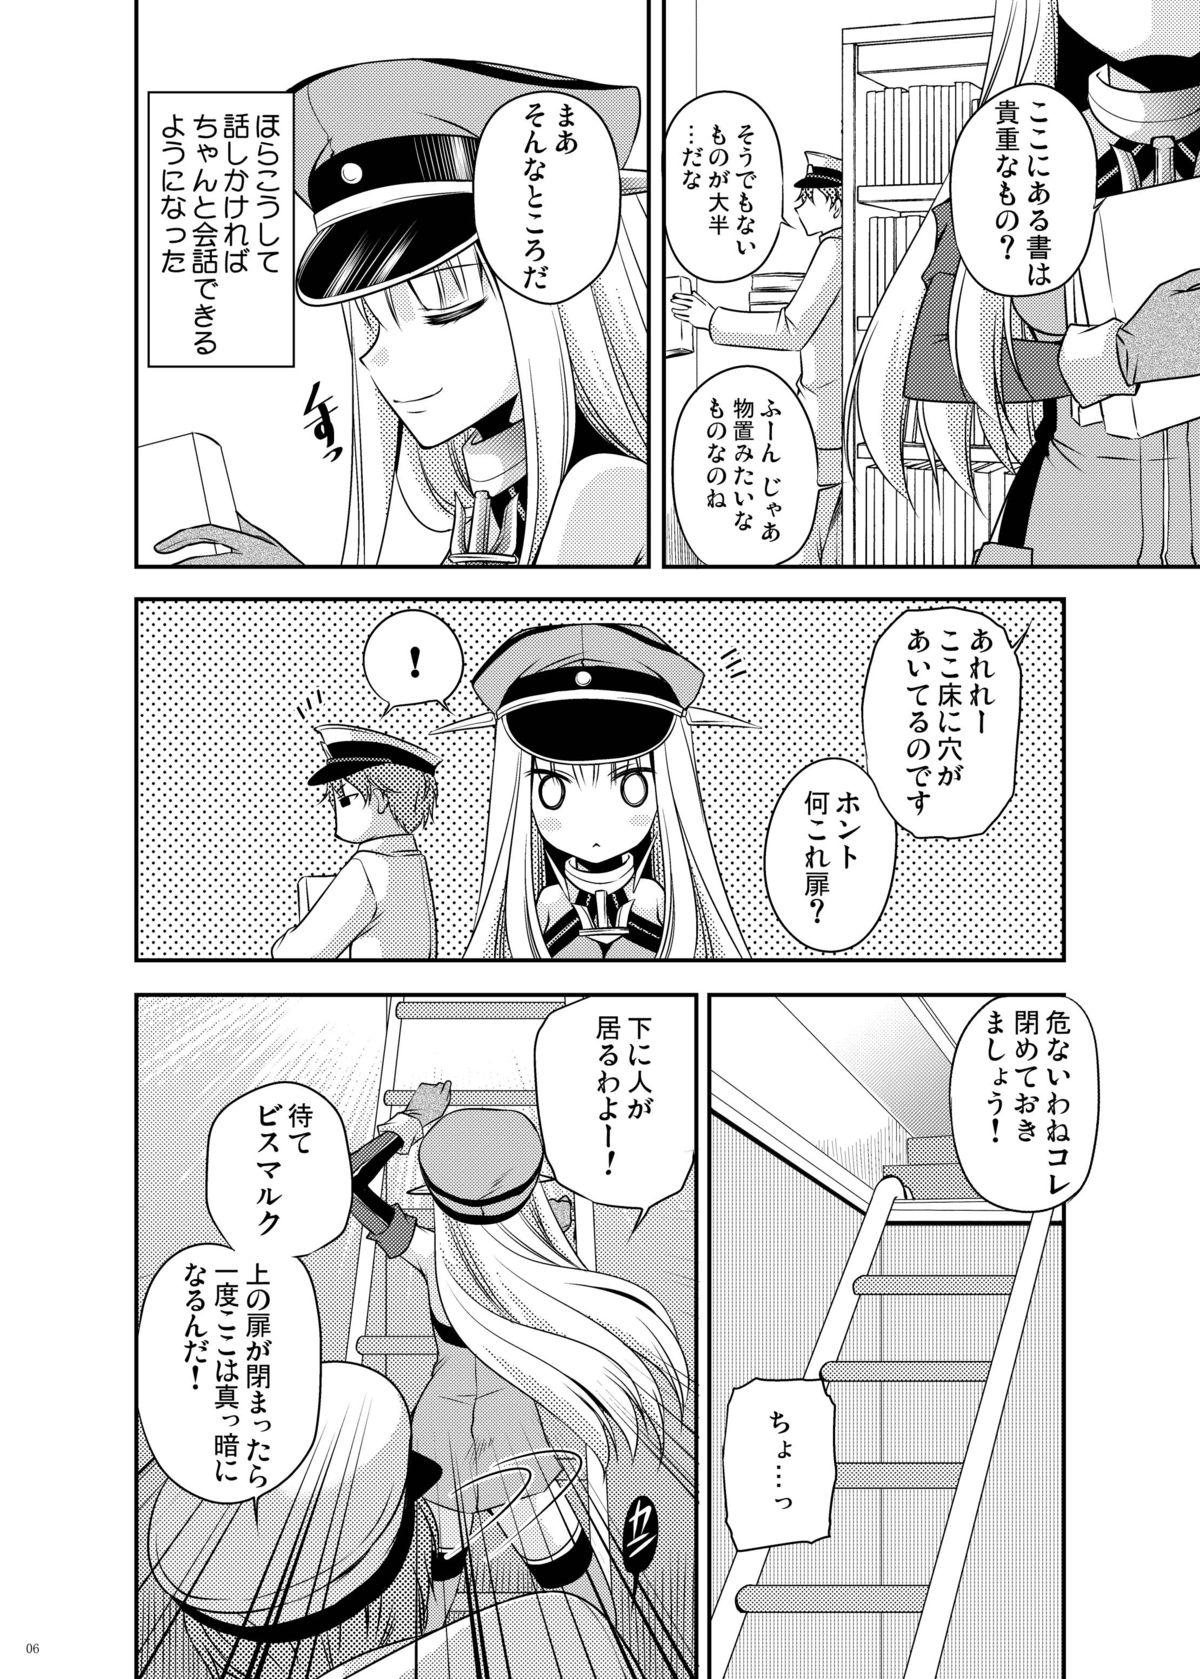 Omorashi Bismarck 2 5